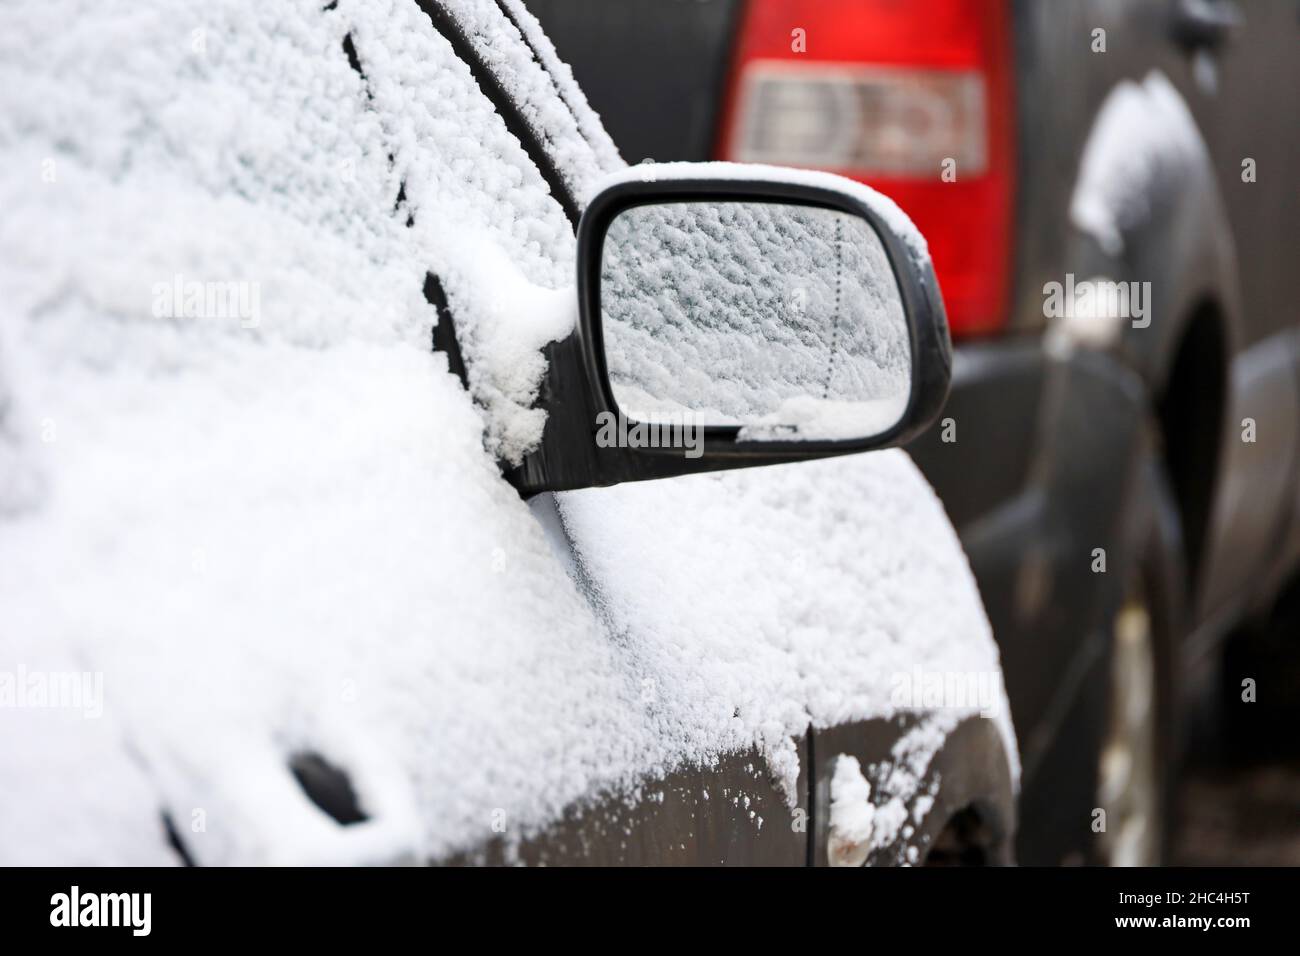 Auto mit Schnee bedeckt, Rückspiegel bei frostigen Wetter. Transport auf dem Parkplatz nach Schneefall im Winter Stockfoto